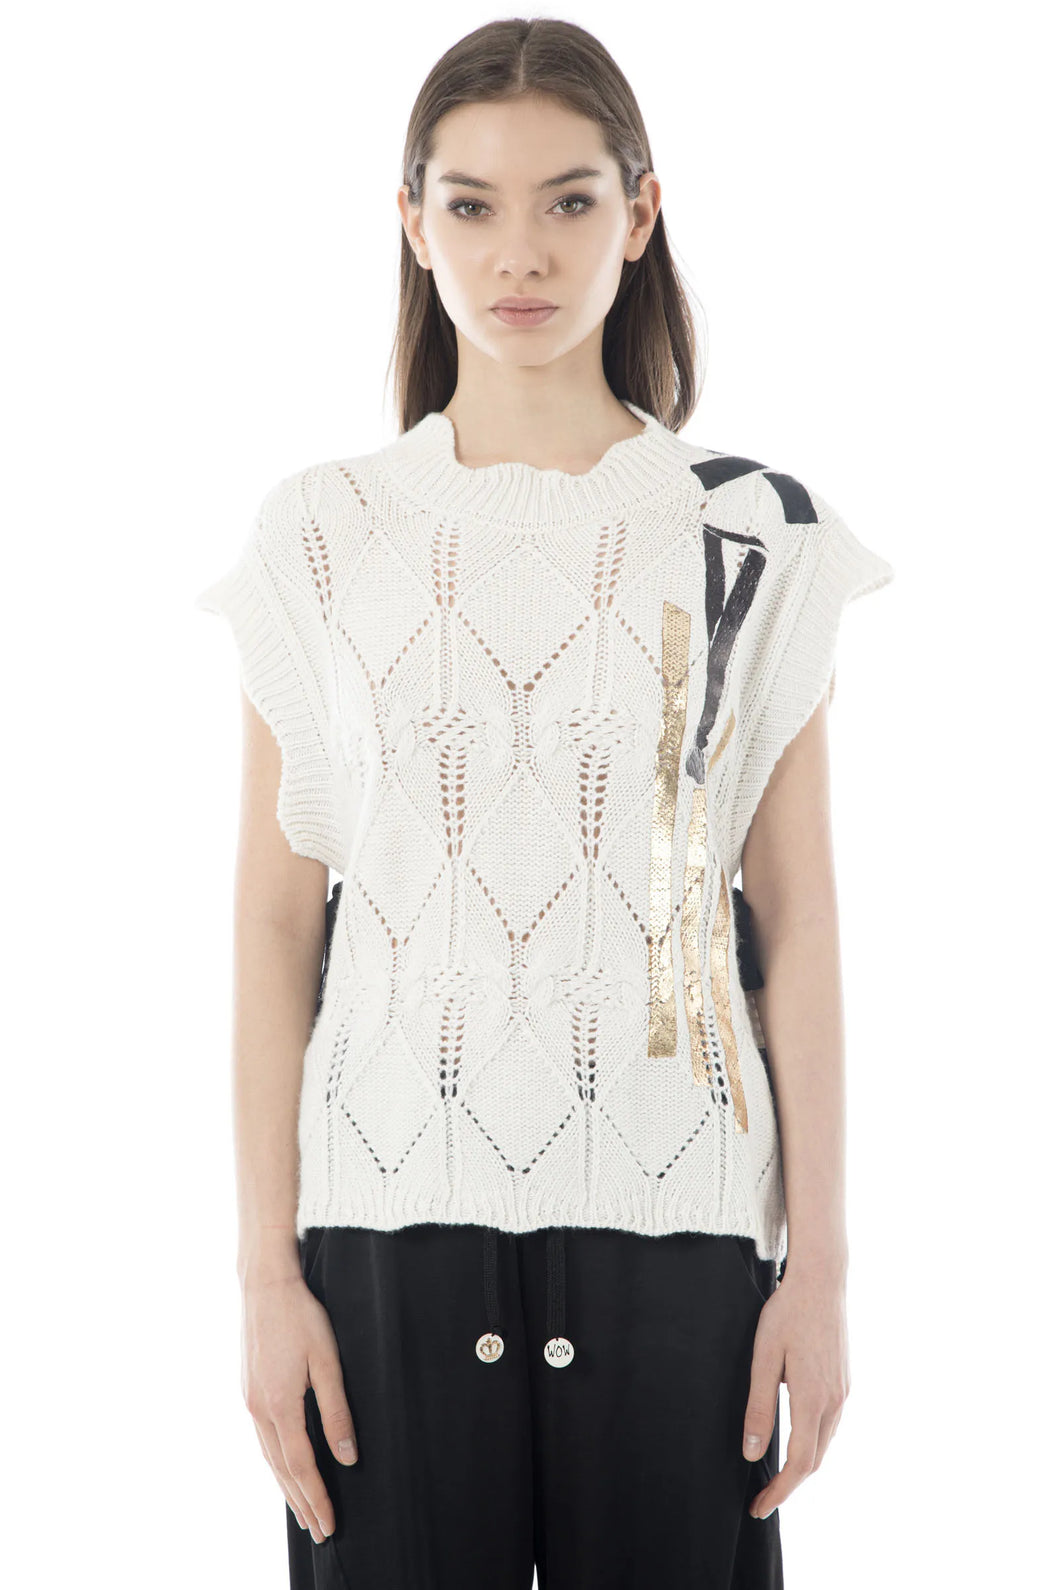 Elisa Cavaletti Perforated Creamy/Black Sleeveless Vest